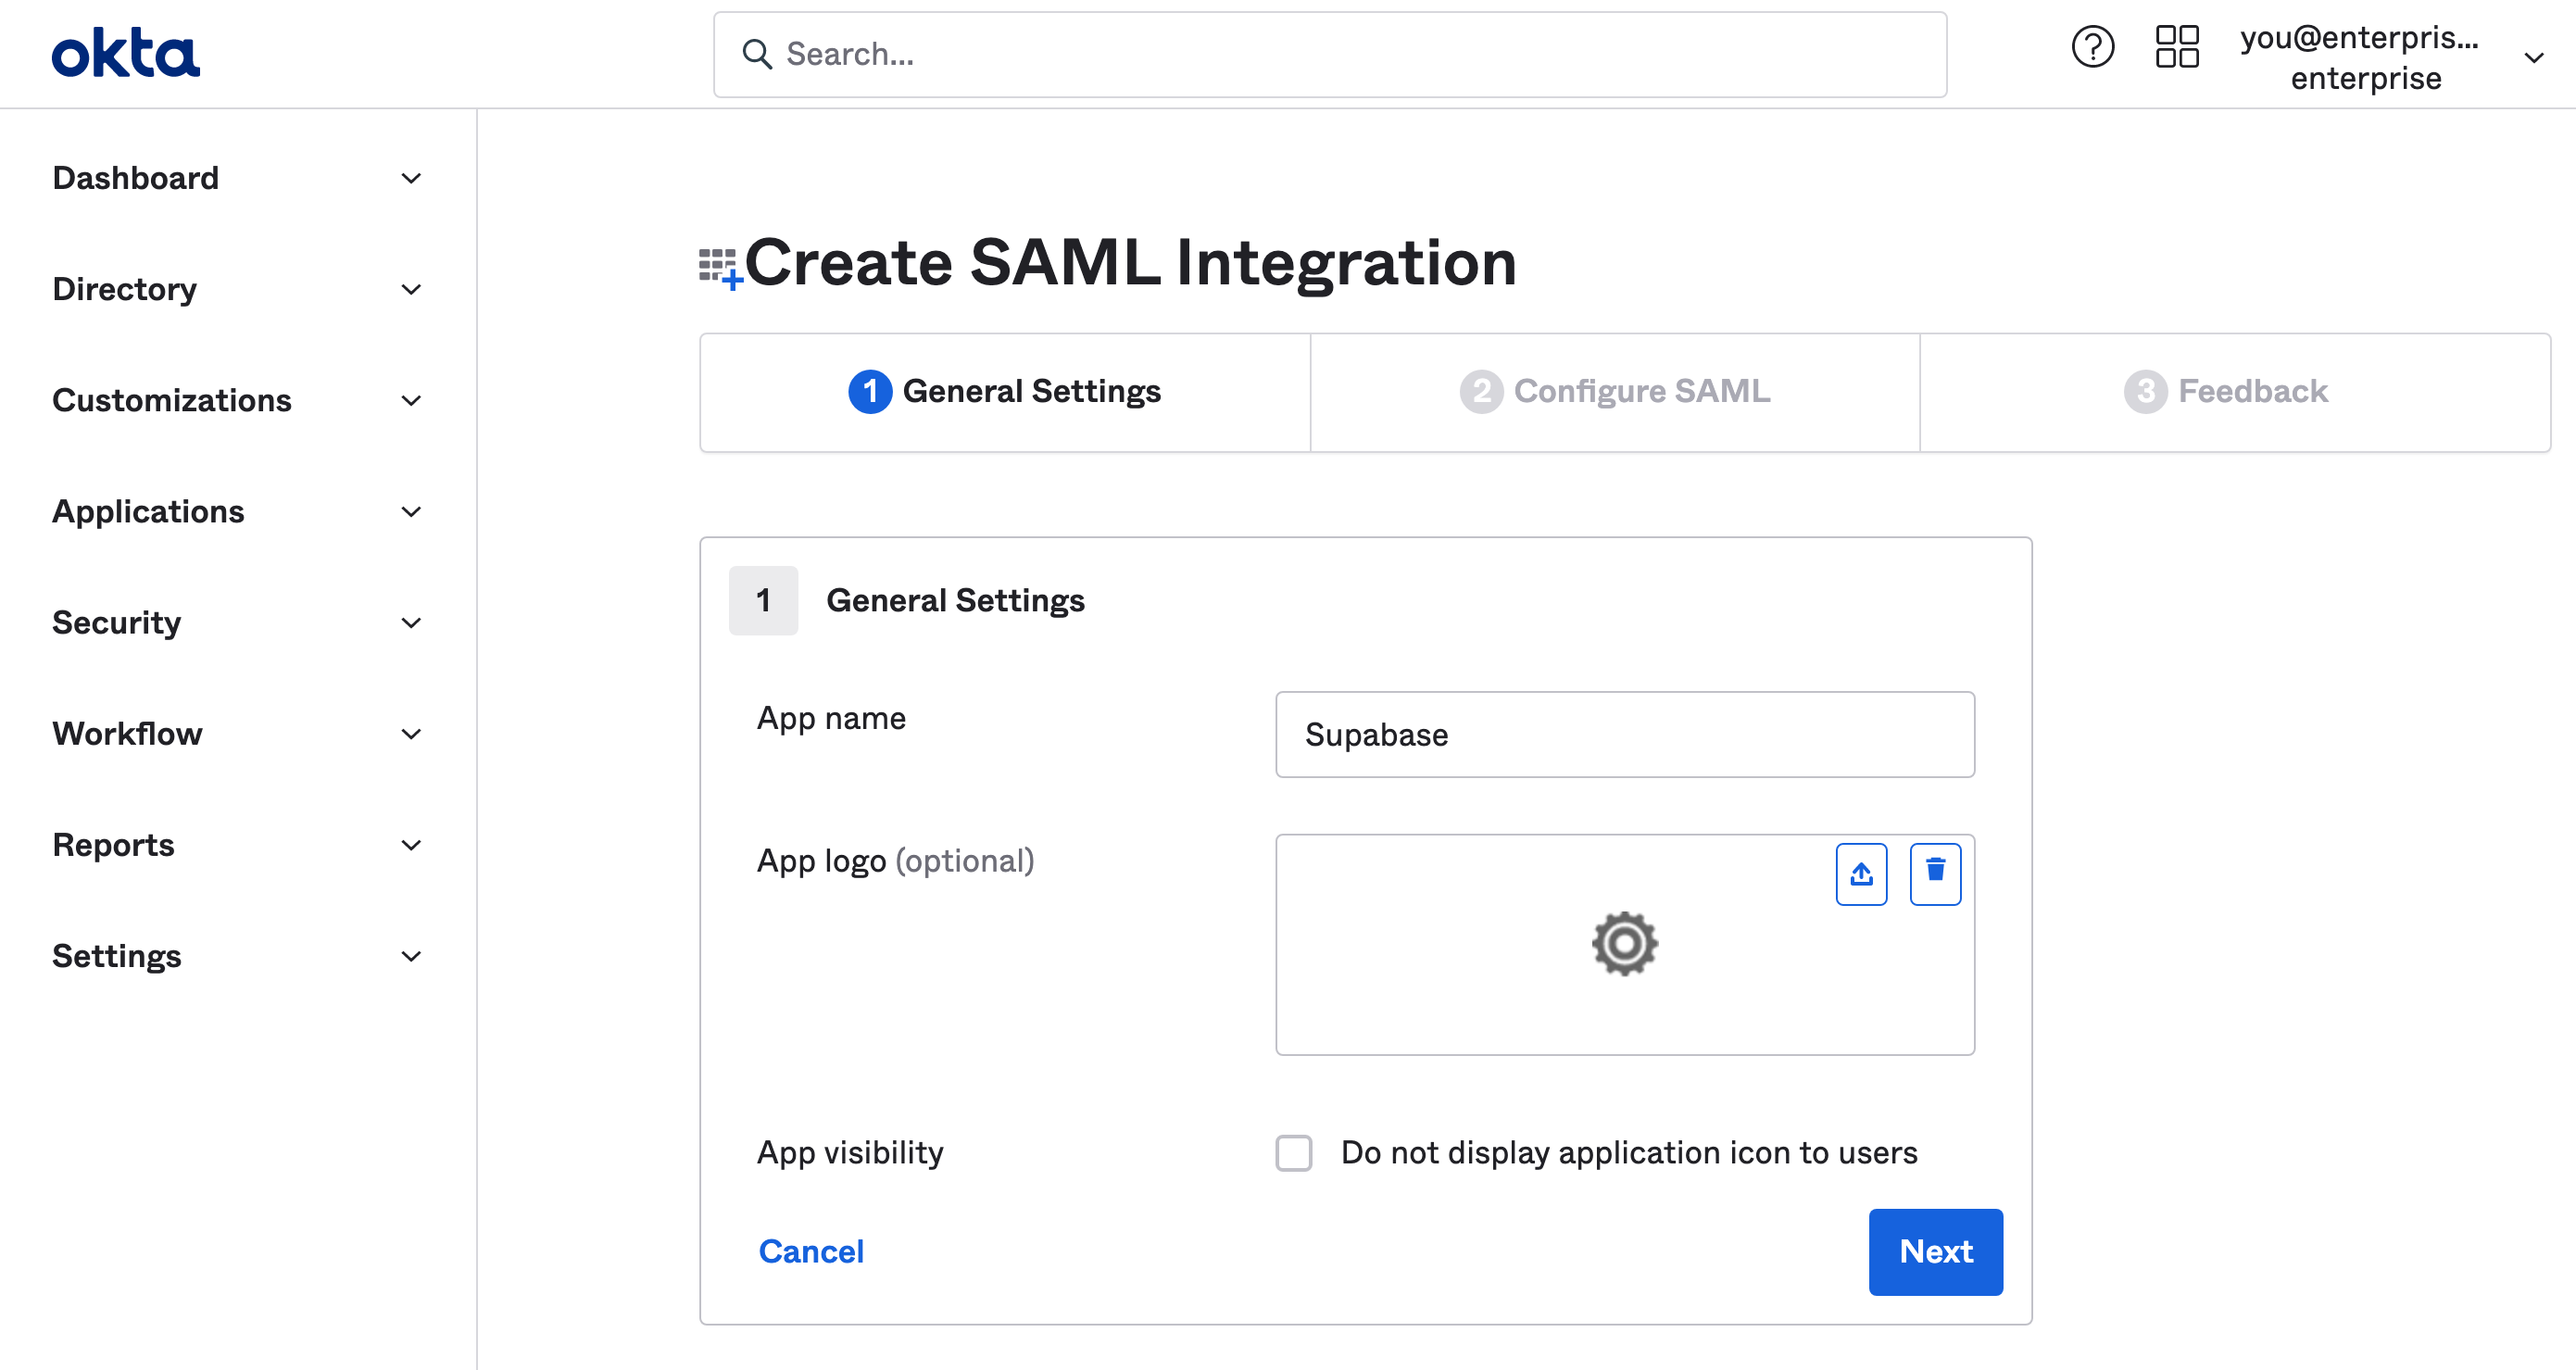 Okta dashboard: Create SAML Integration
wizard